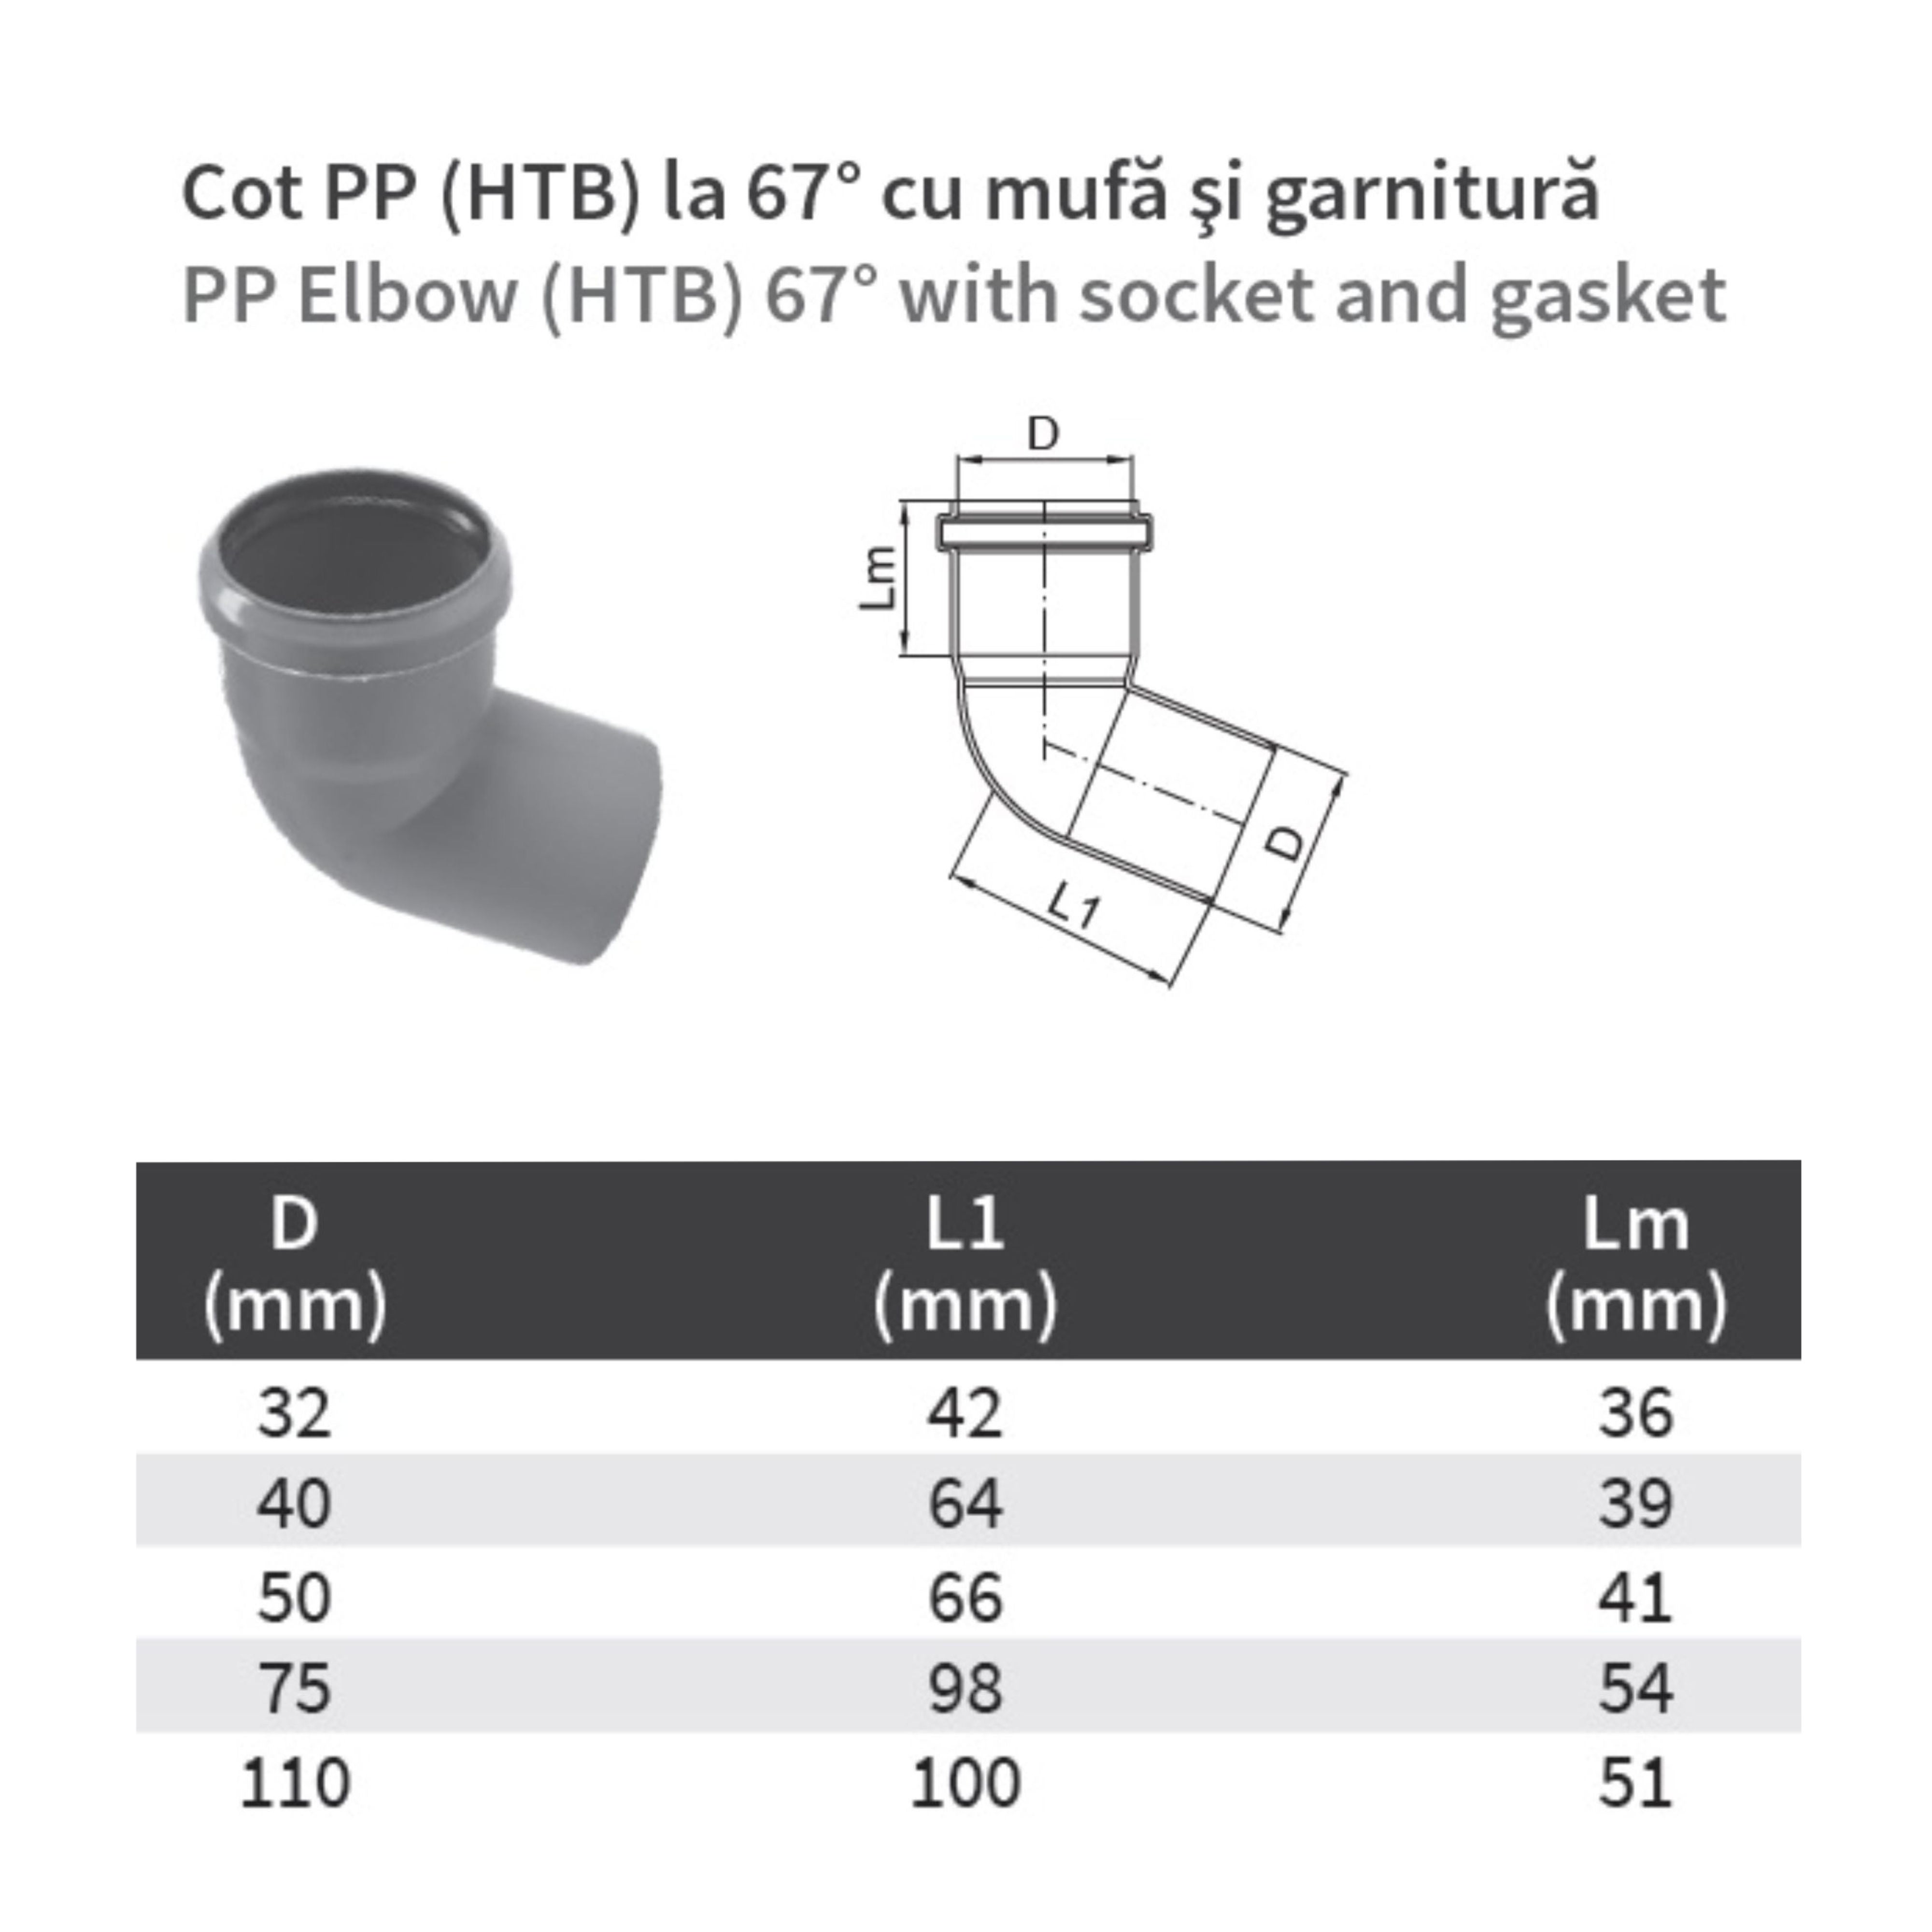 Cot PP HTB, pentru scurgere, D 40 mm, 67  grade